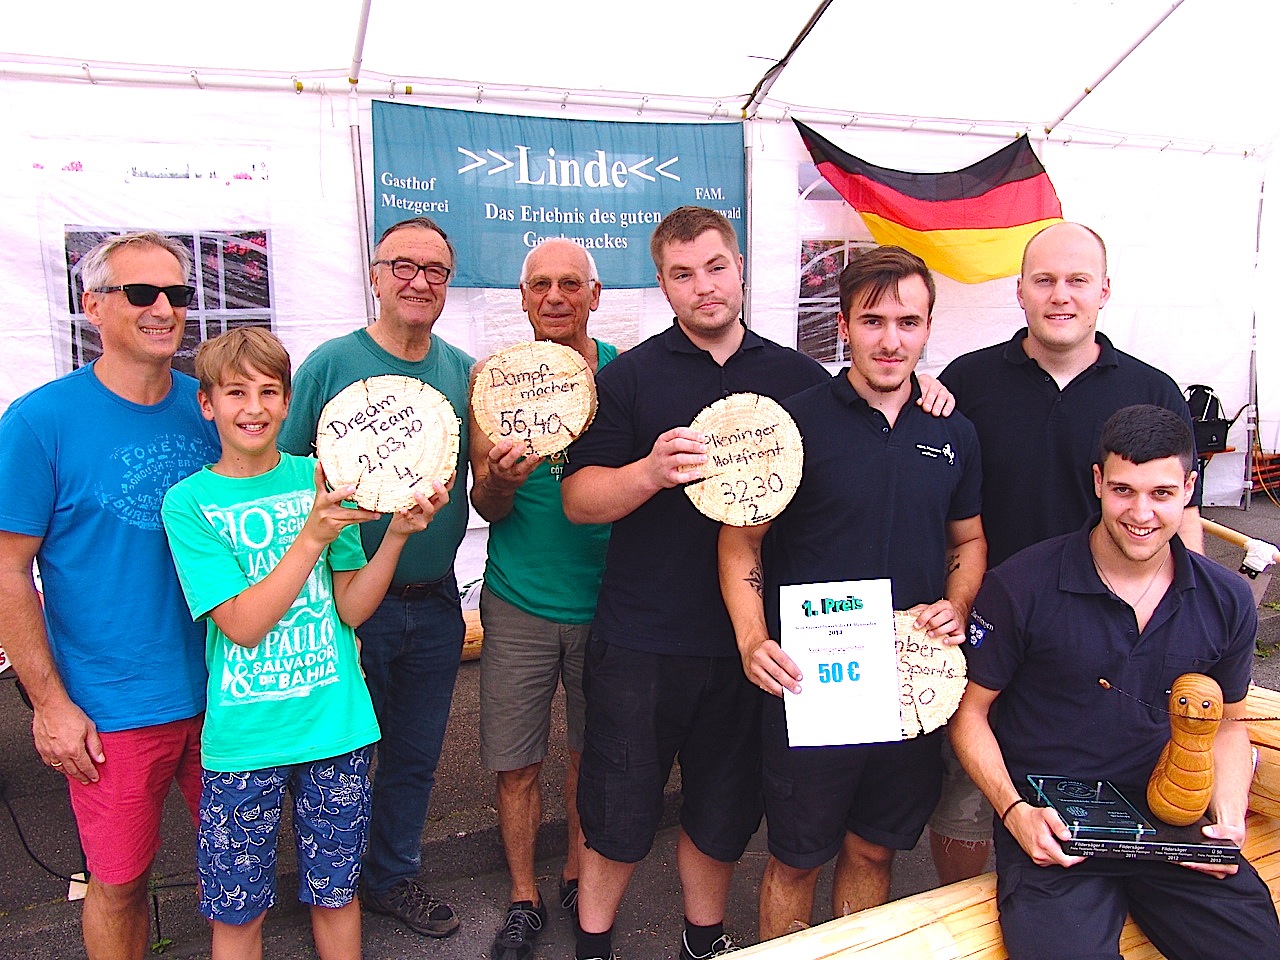 Sägewettbewerb am 20.7.2014 beim Tag der offenen Tür der Freiwilligen Feuerwehr Stuttgart Heumaden